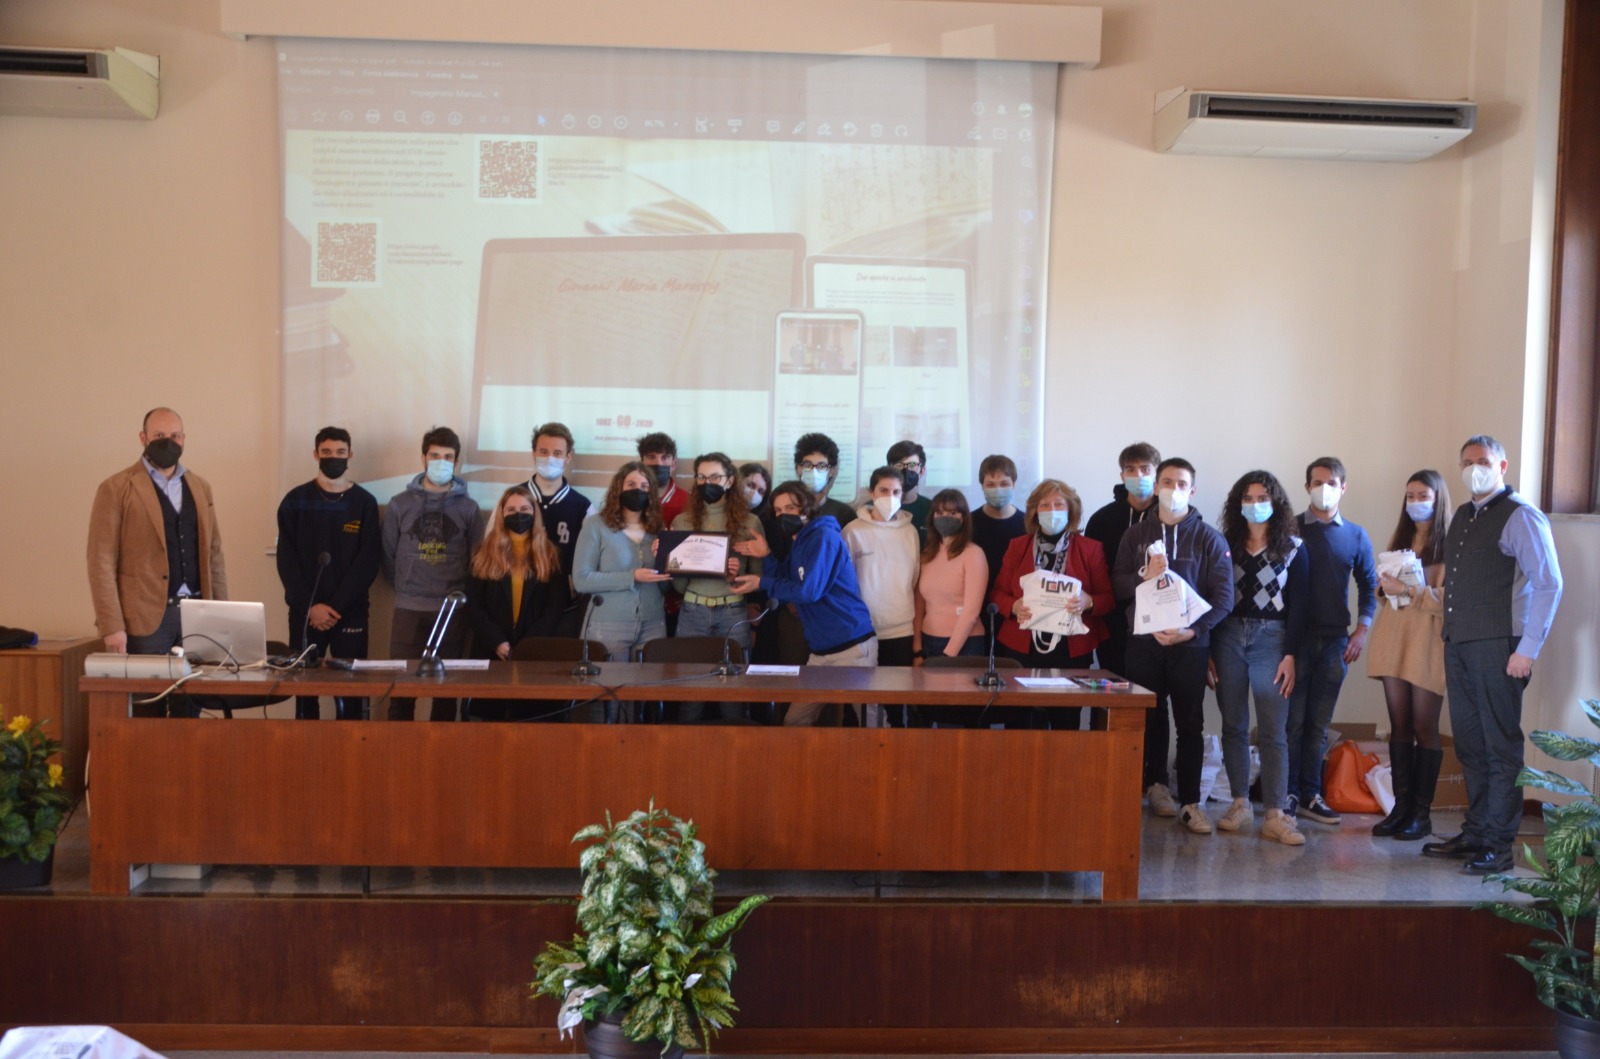 Pandemia e attualità, gli studenti di Gorizia raccontano i due anni grazie a Icm